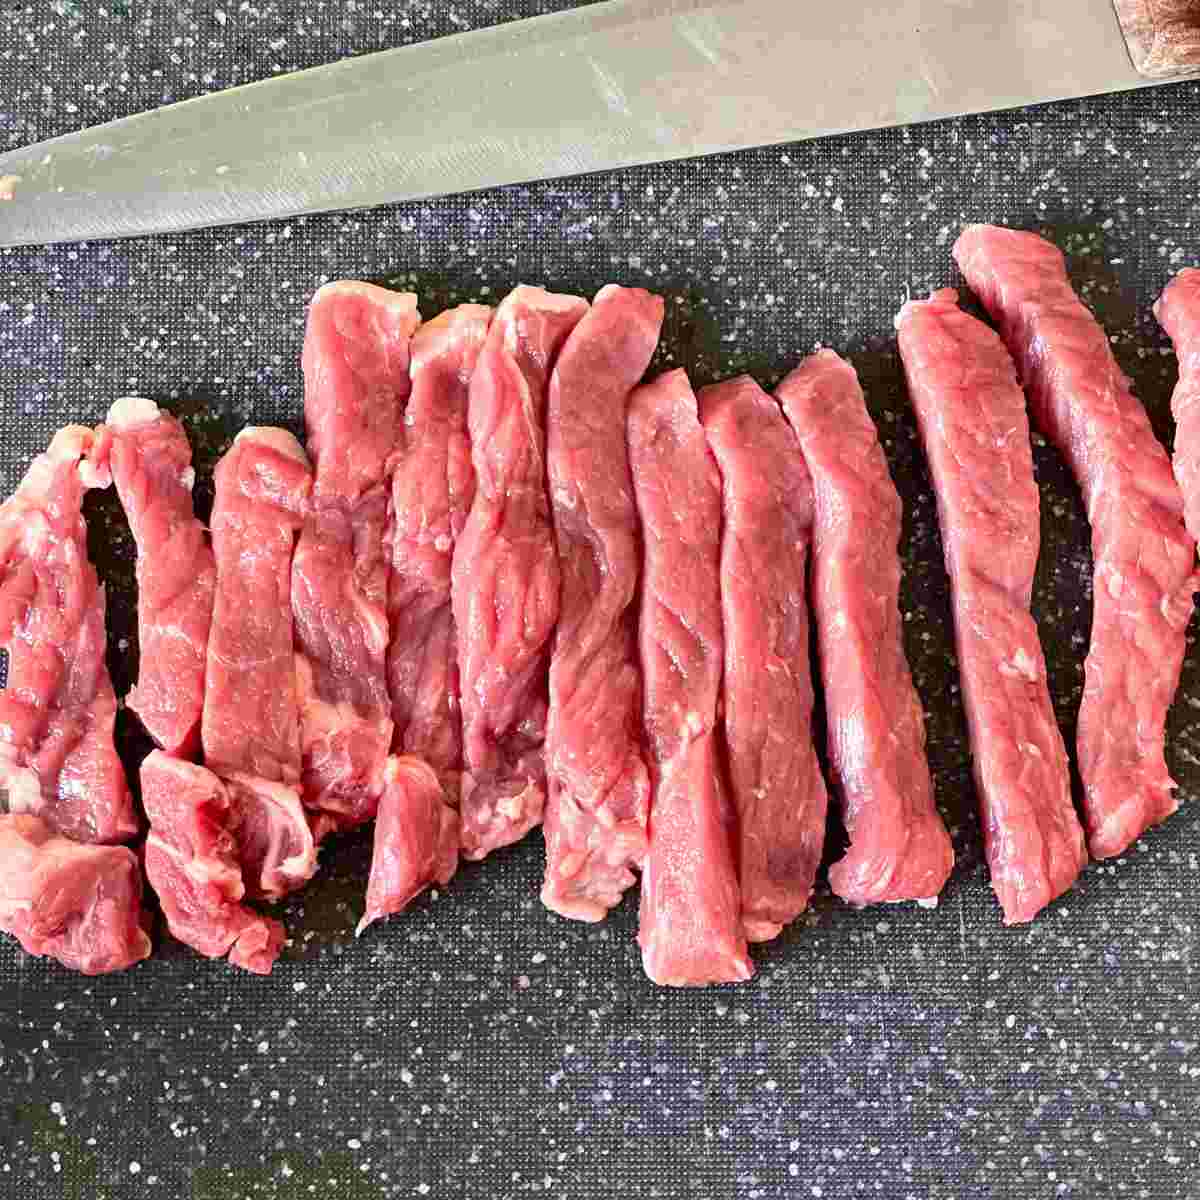 Sirloin steak sliced thinly